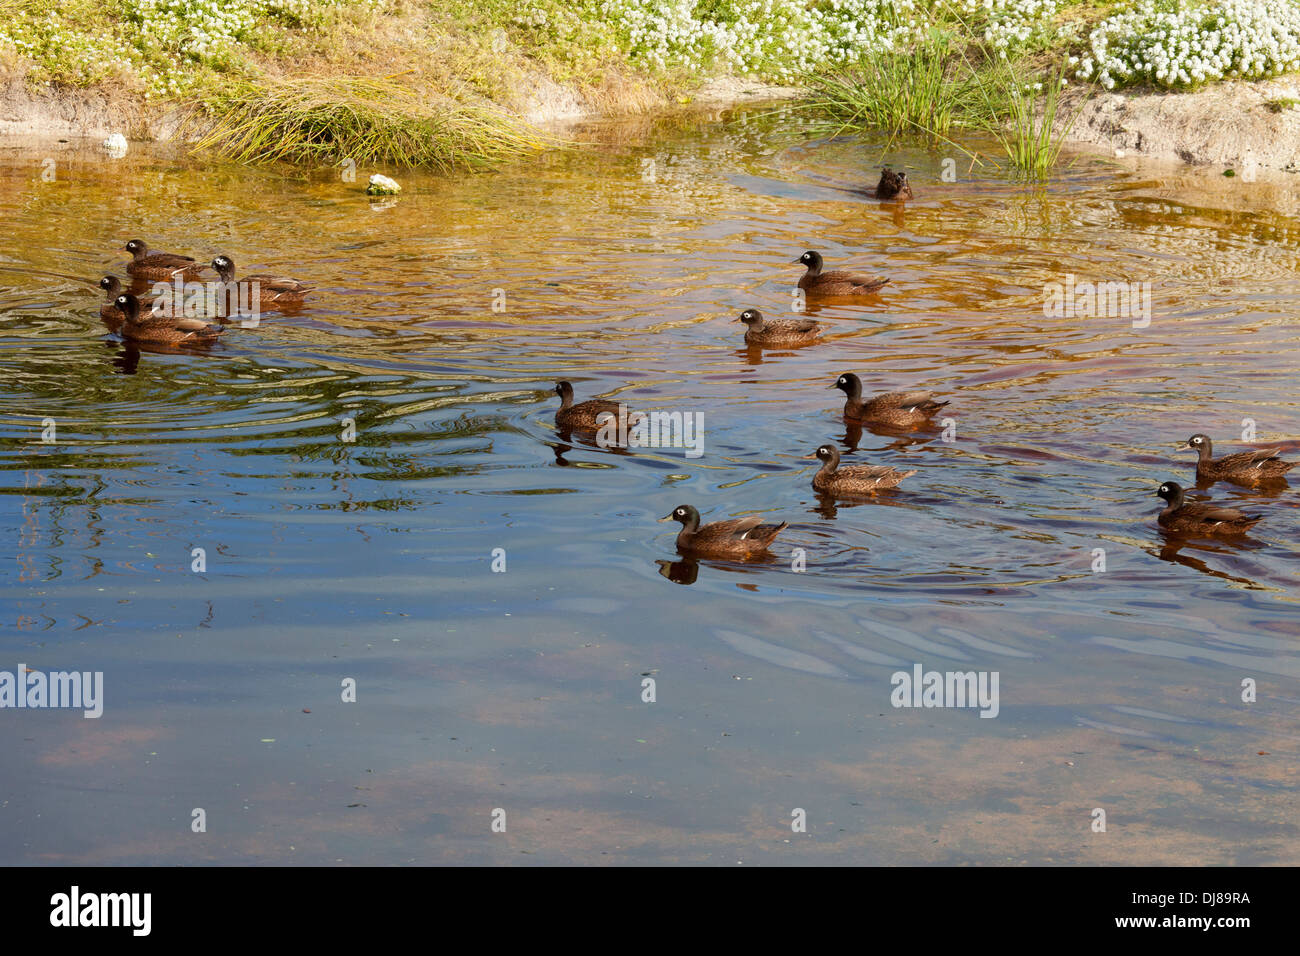 Les canards Laysan, en danger critique d'extinction, nagent dans un étang de l'atoll Midway. Anas laysanensis. Banque D'Images